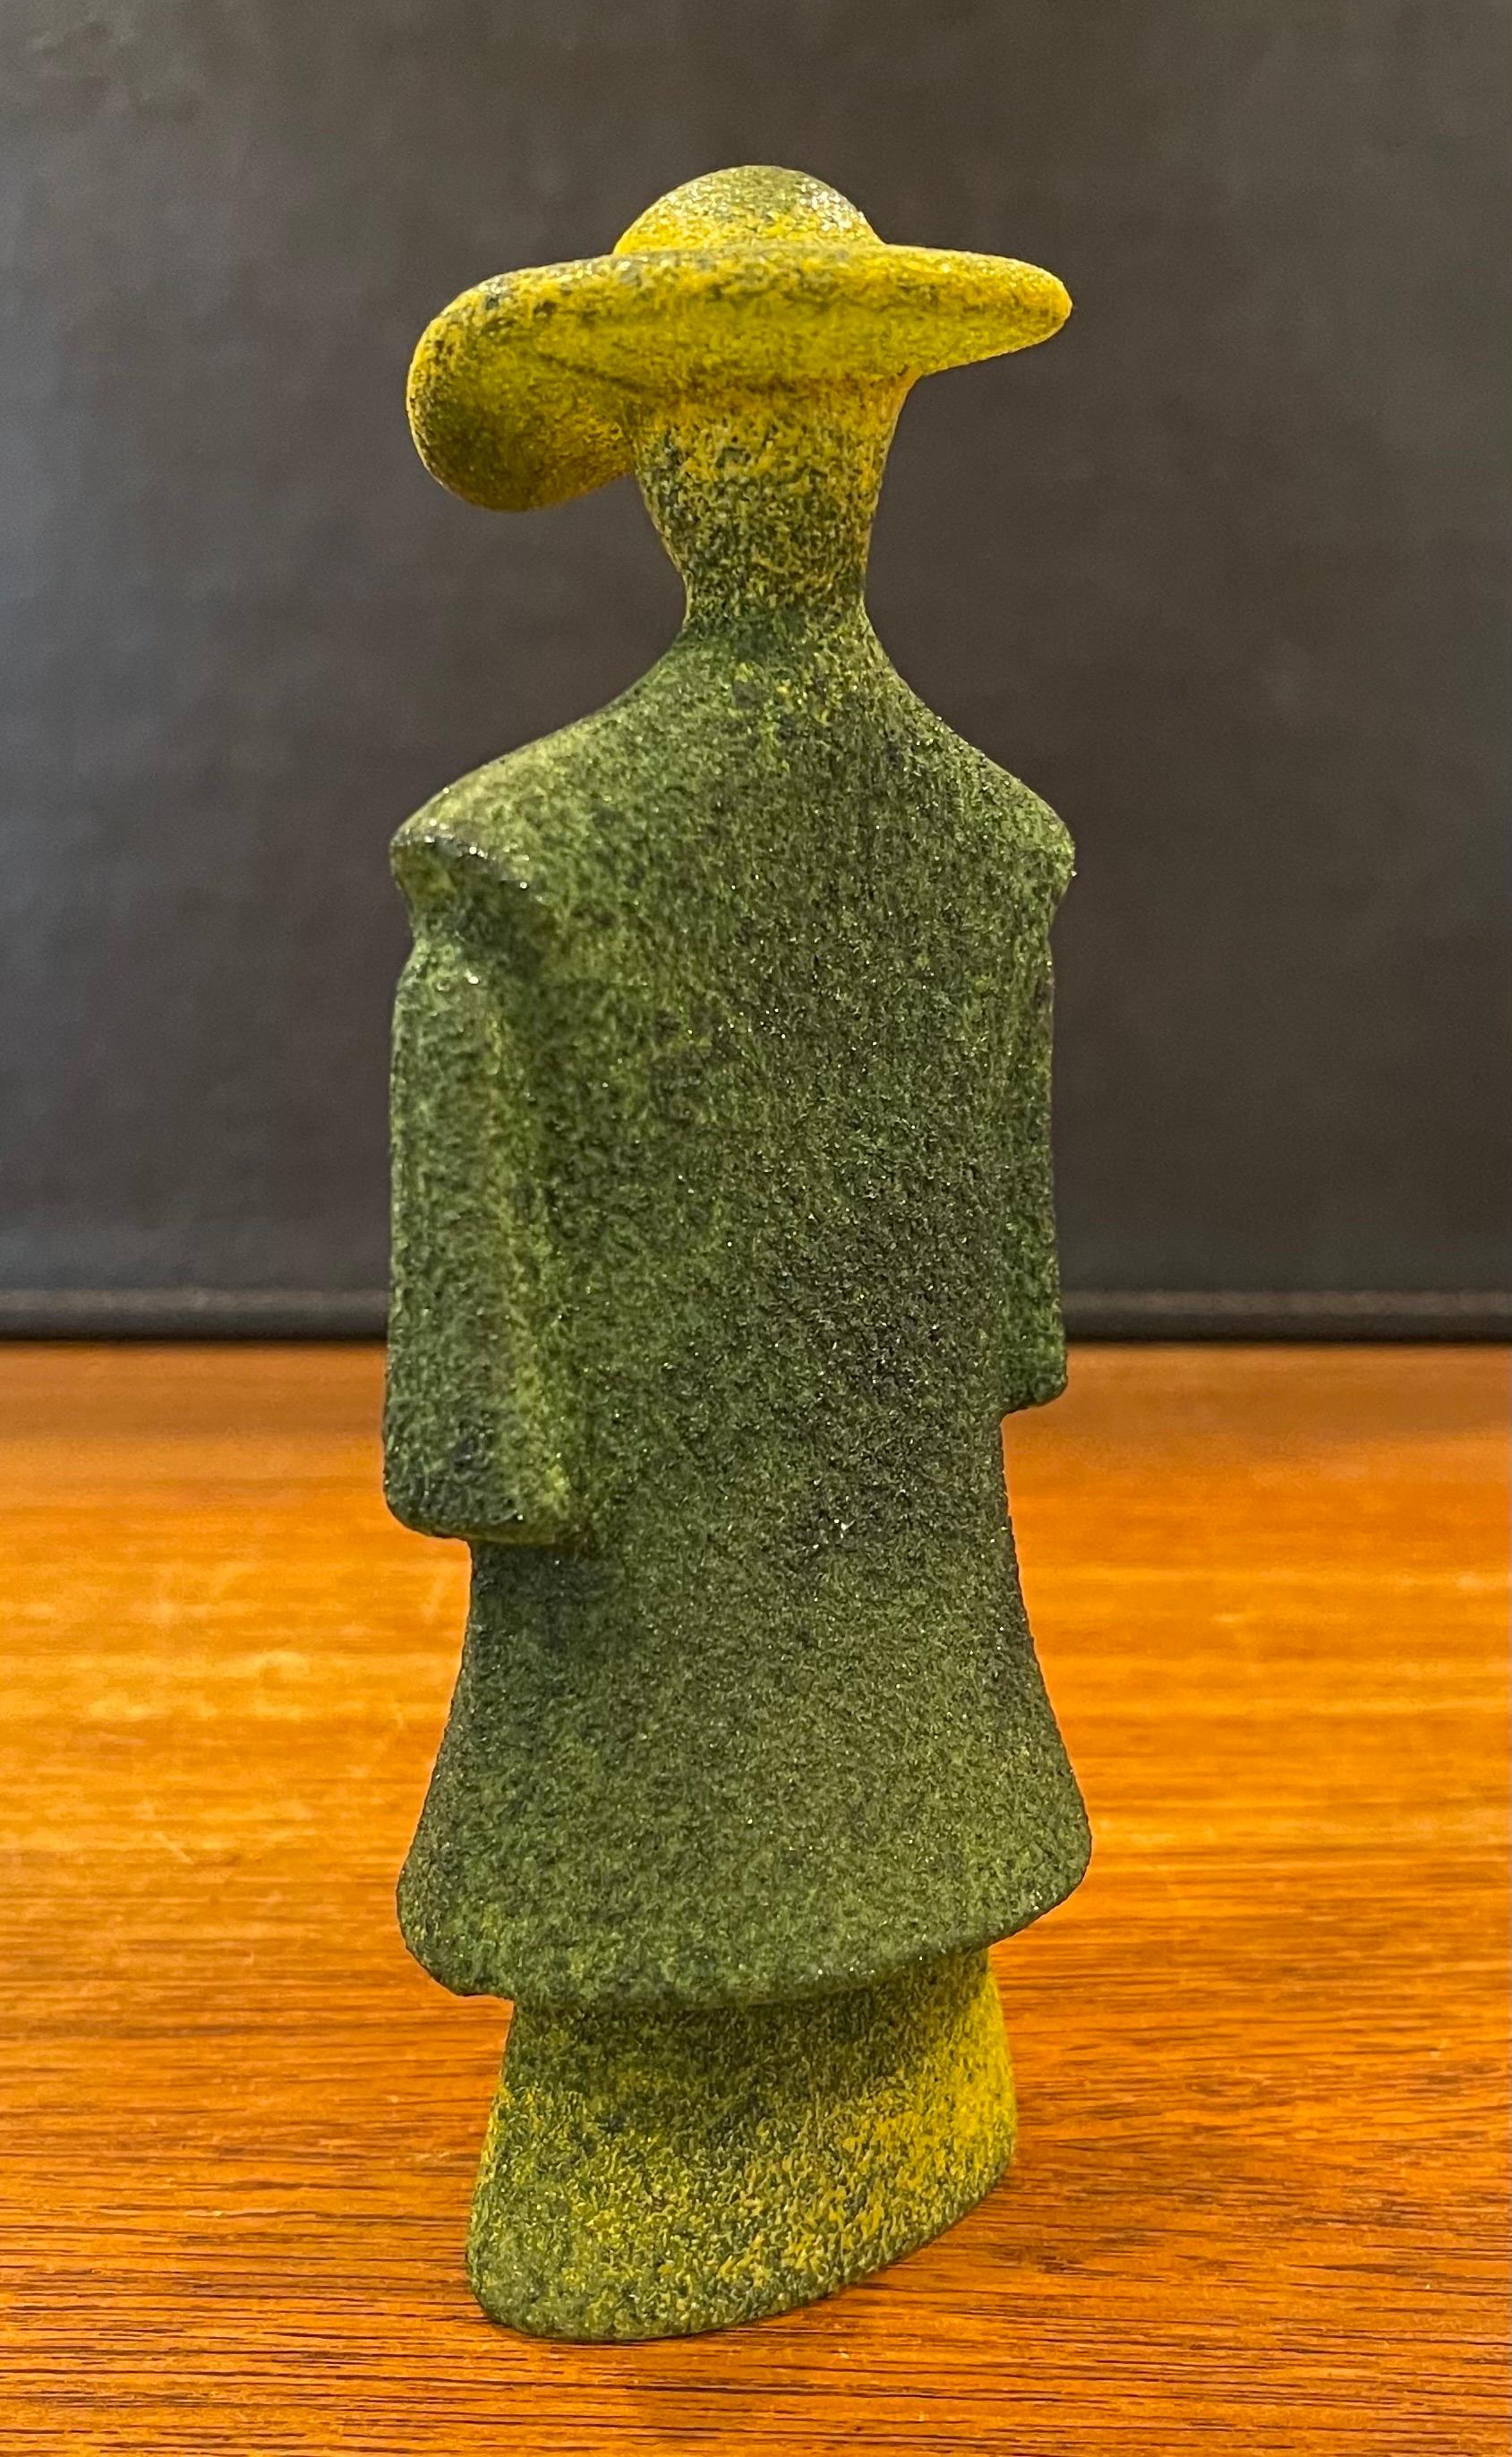 Poncho Green Art Glass Catwalk Sculpture by Kjell Engman for Kosta Boda Sweden For Sale 4